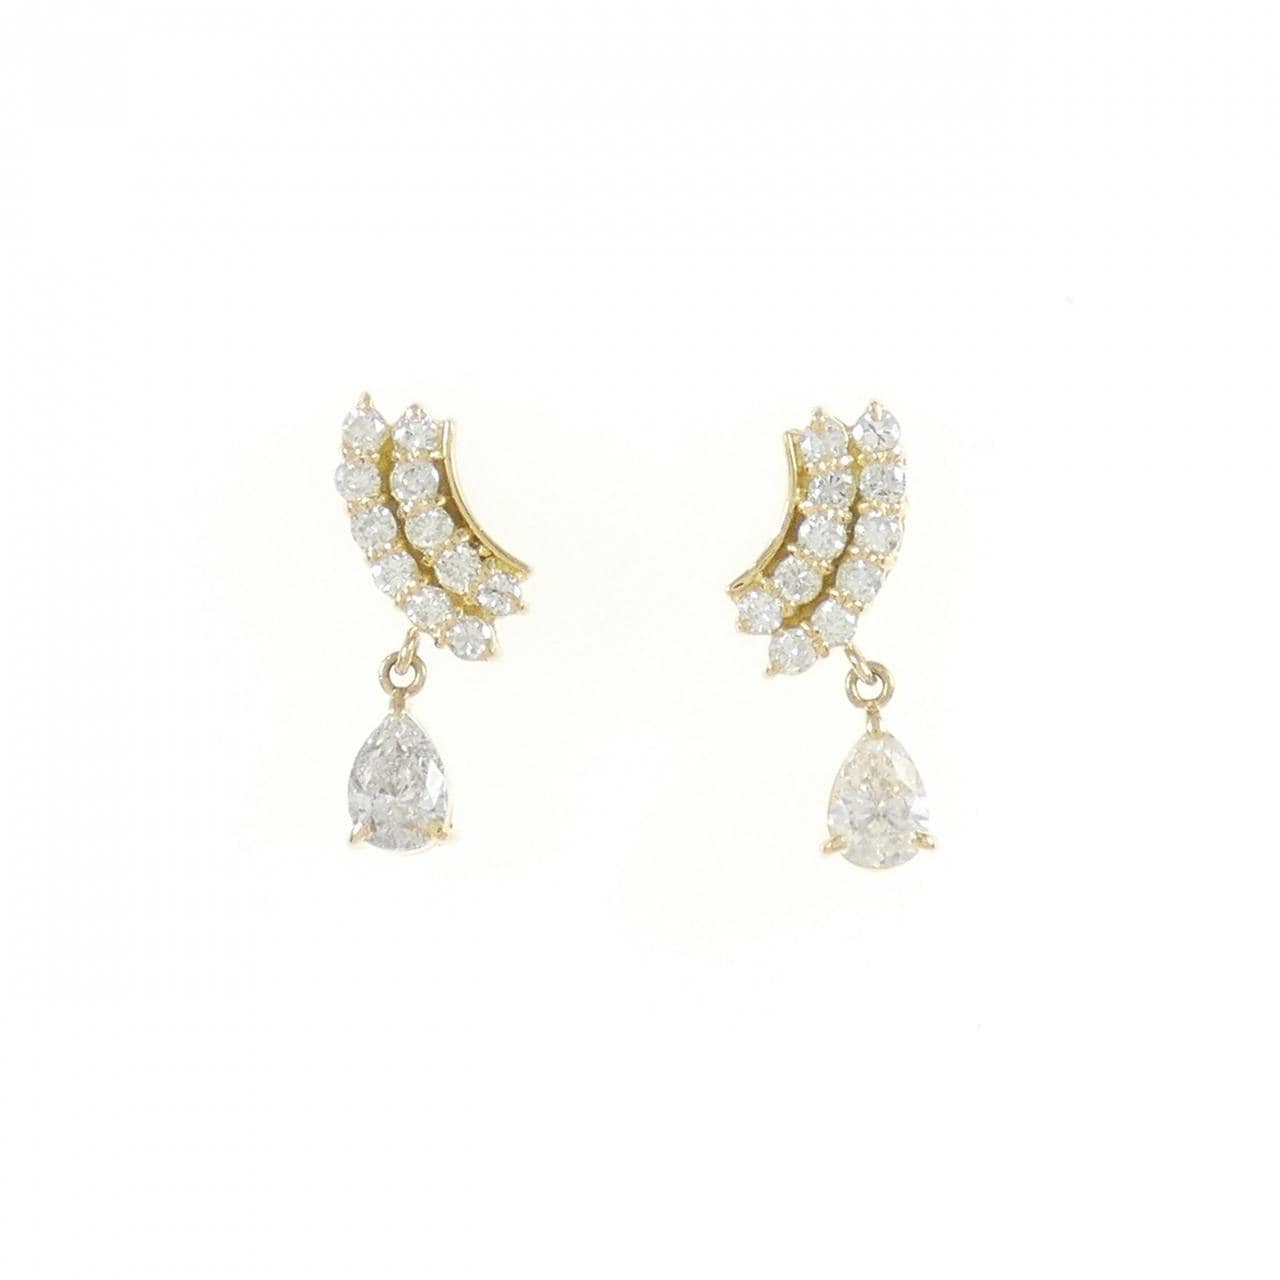 K18YG Diamond Earrings 0.71CT